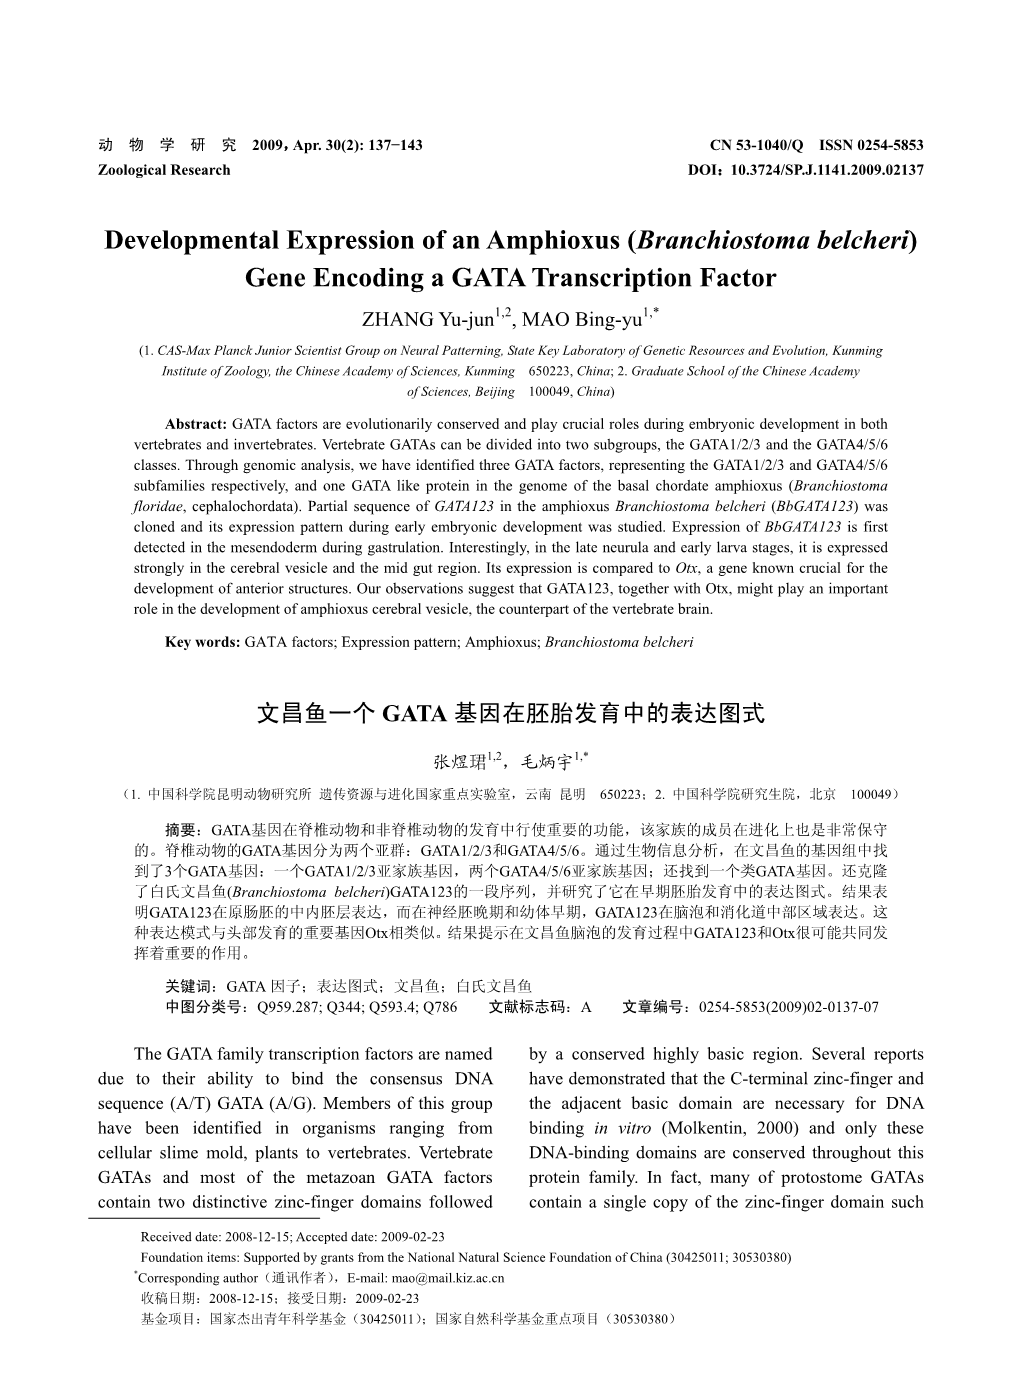 Gene Encoding a GATA Transcription Factor ZHANG Yu-Jun1,2, MAO Bing-Yu1,*